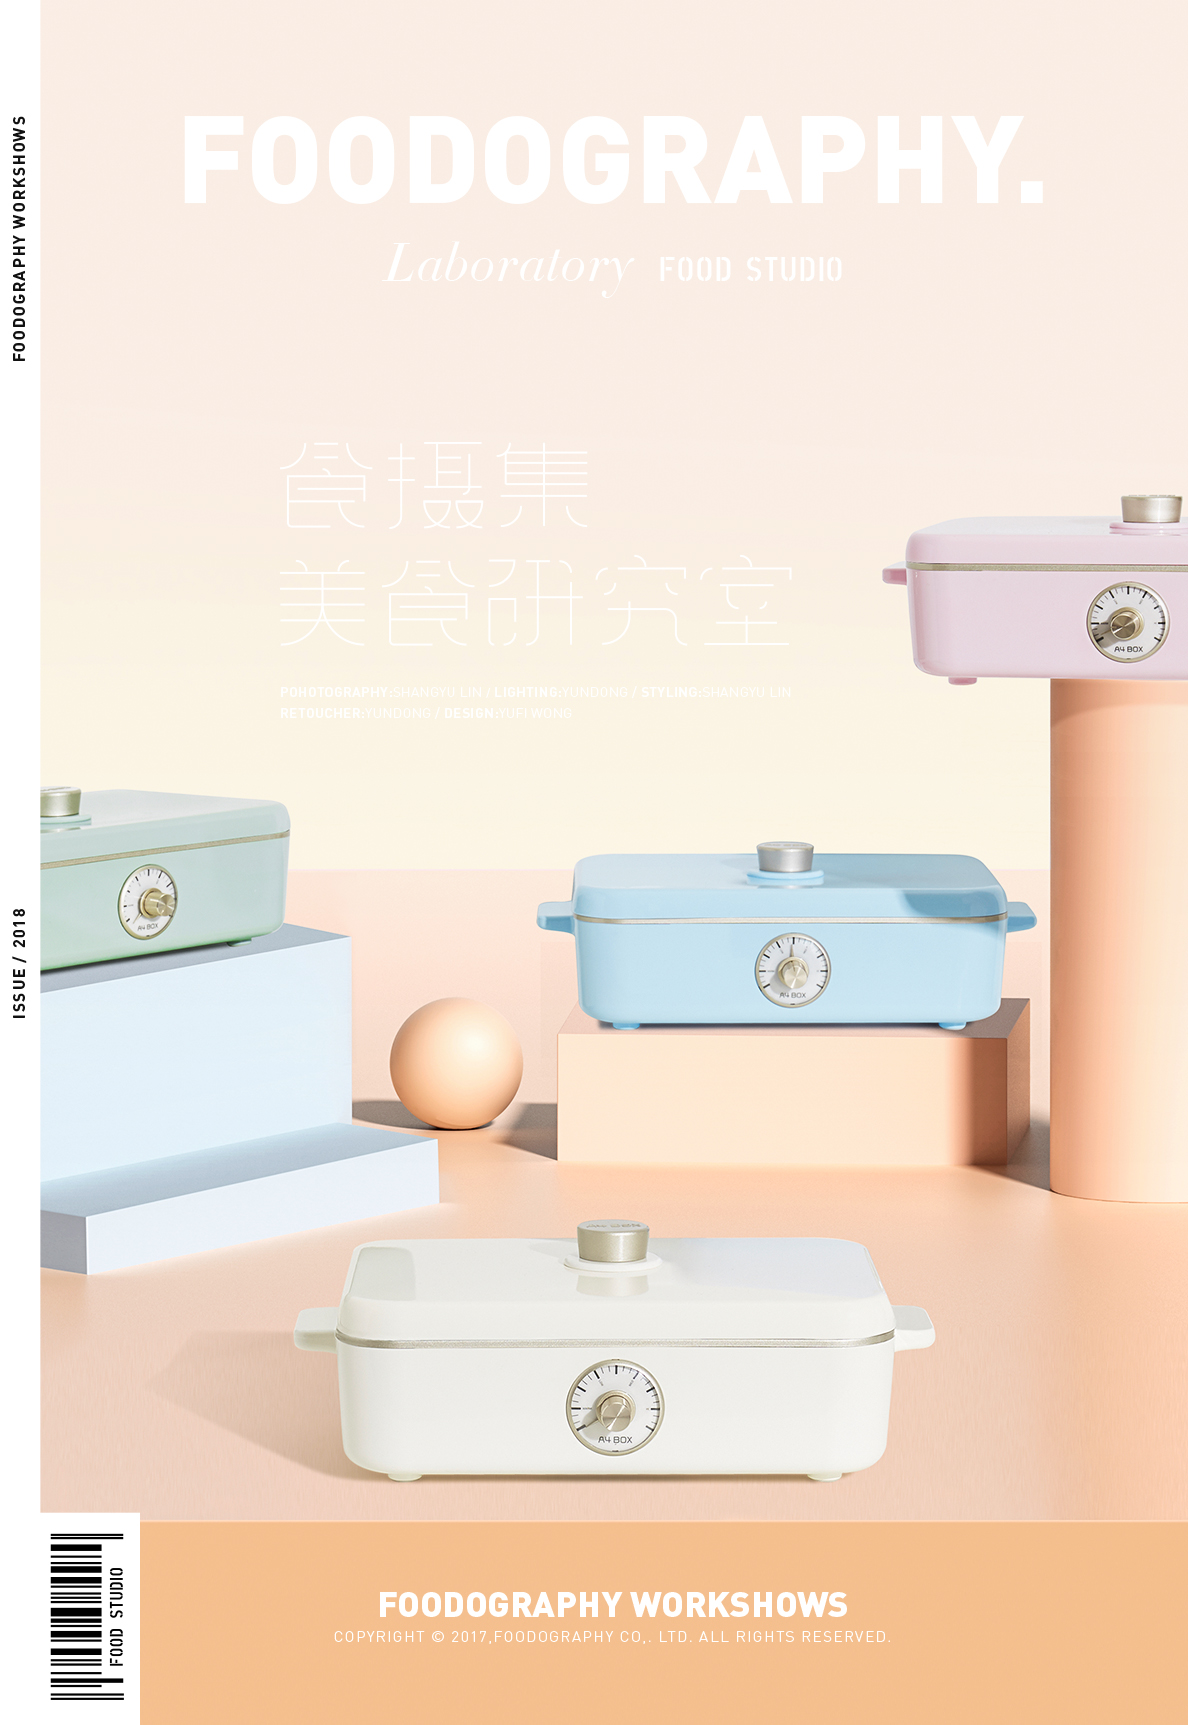 “适盒”年轻人的多功能料理锅 A4BOX | 食摄集